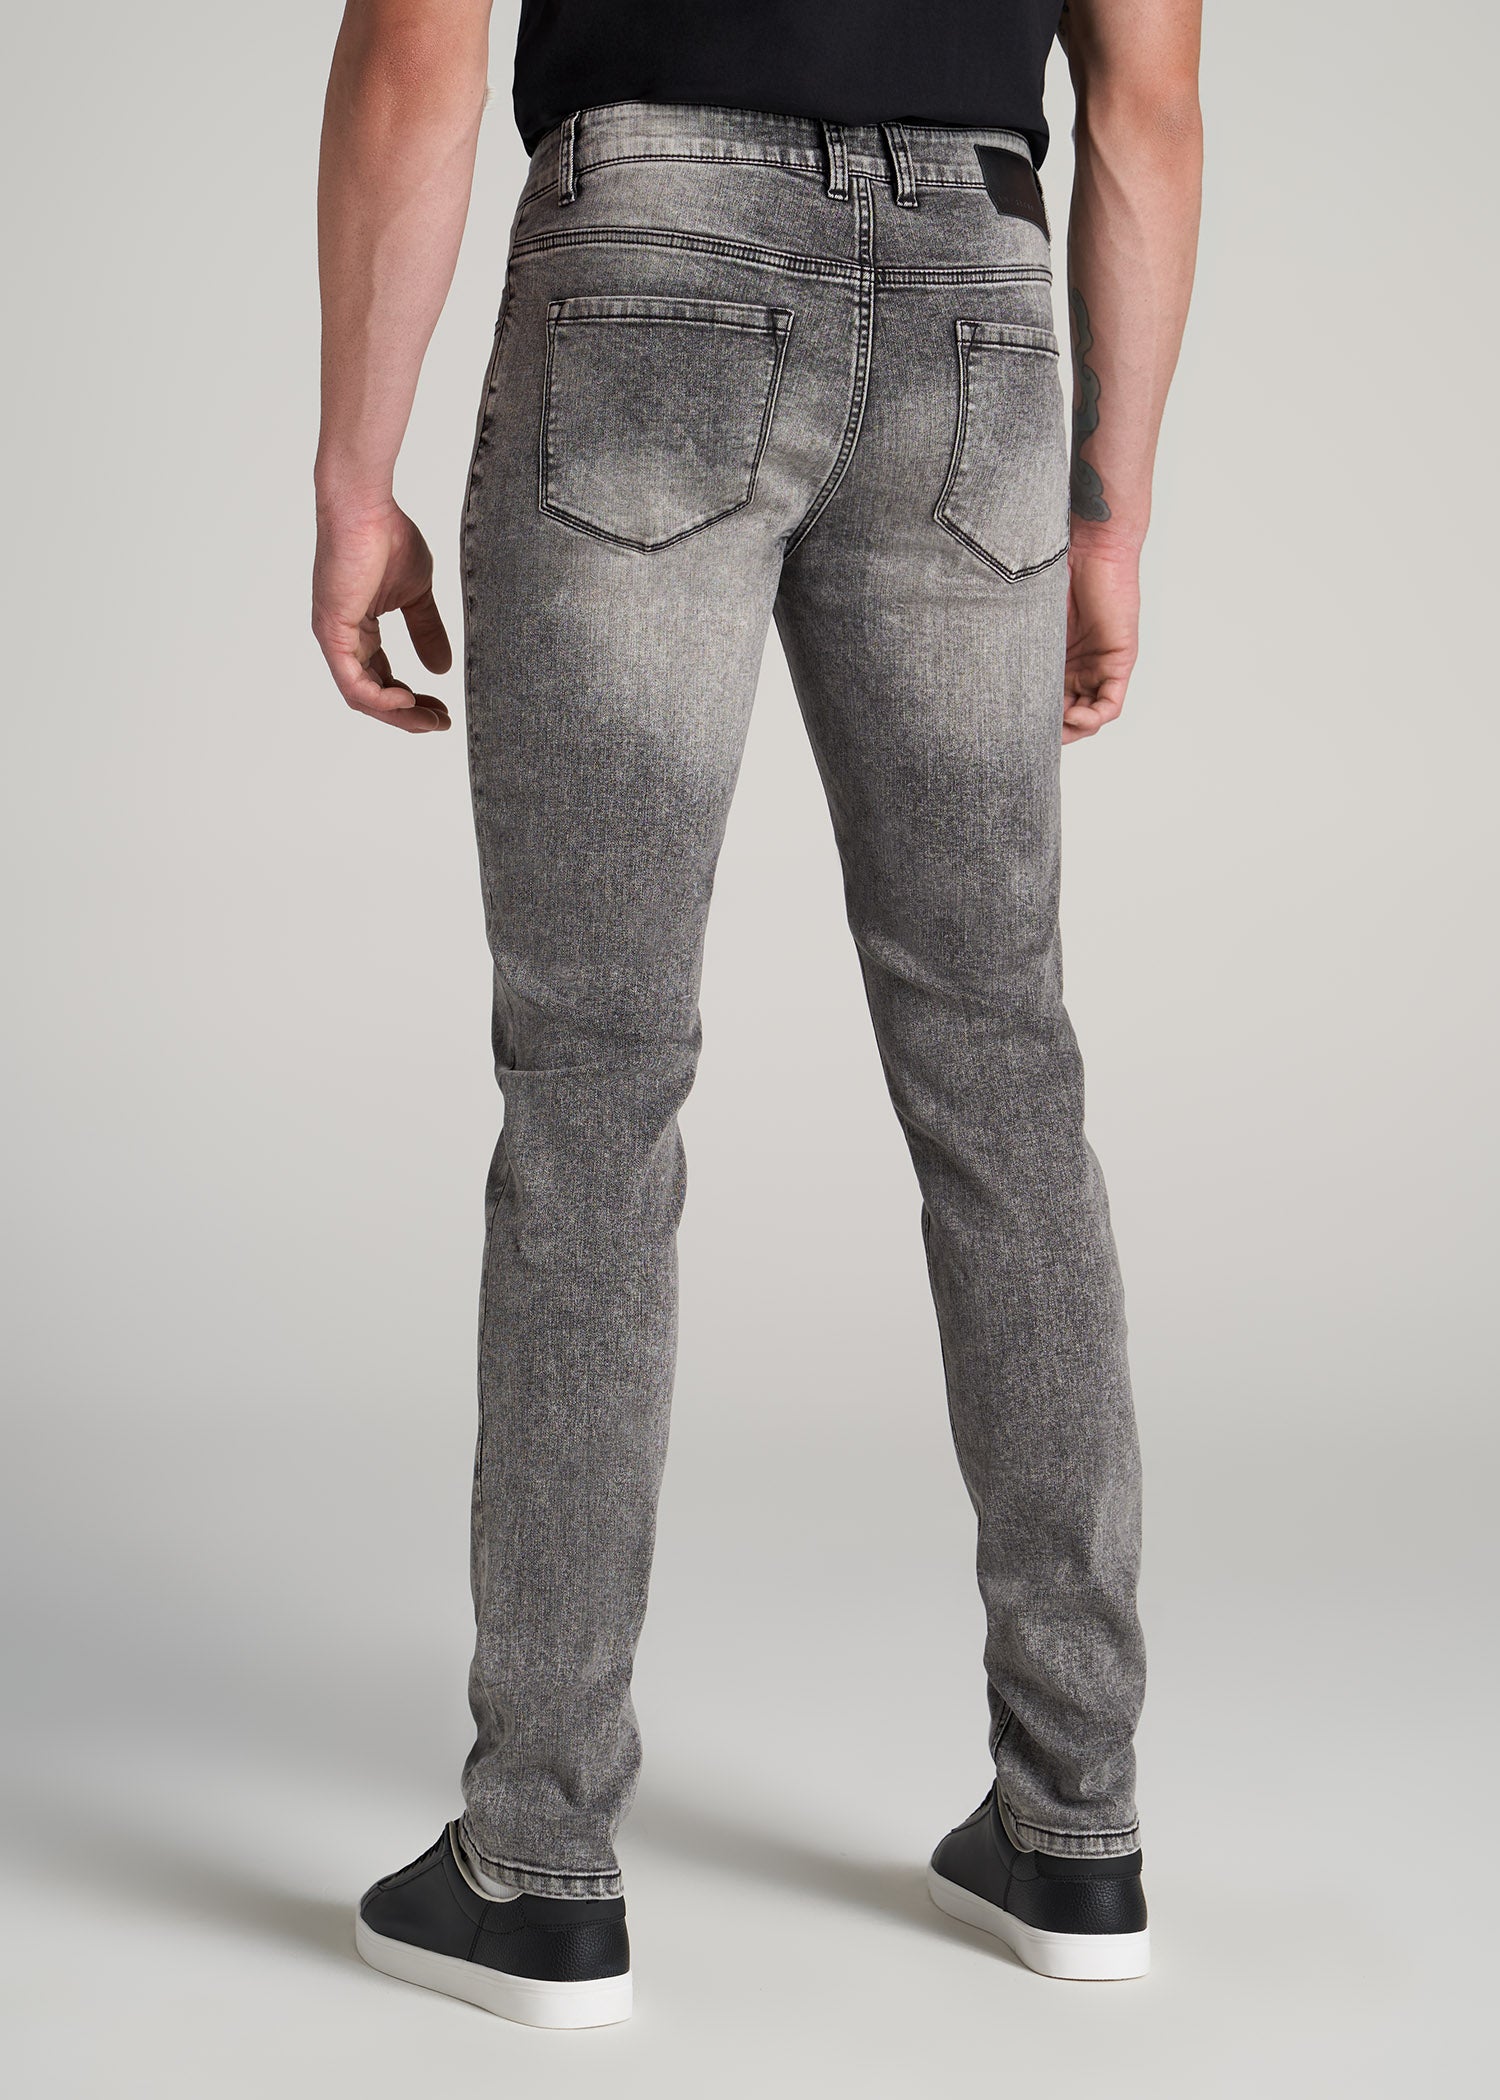 Men's Fashion Jeans Pants | Slim Fit Jeans Men | Men's Slim Jeans | Ripped Jeans  Men - Jeans - Aliexpress